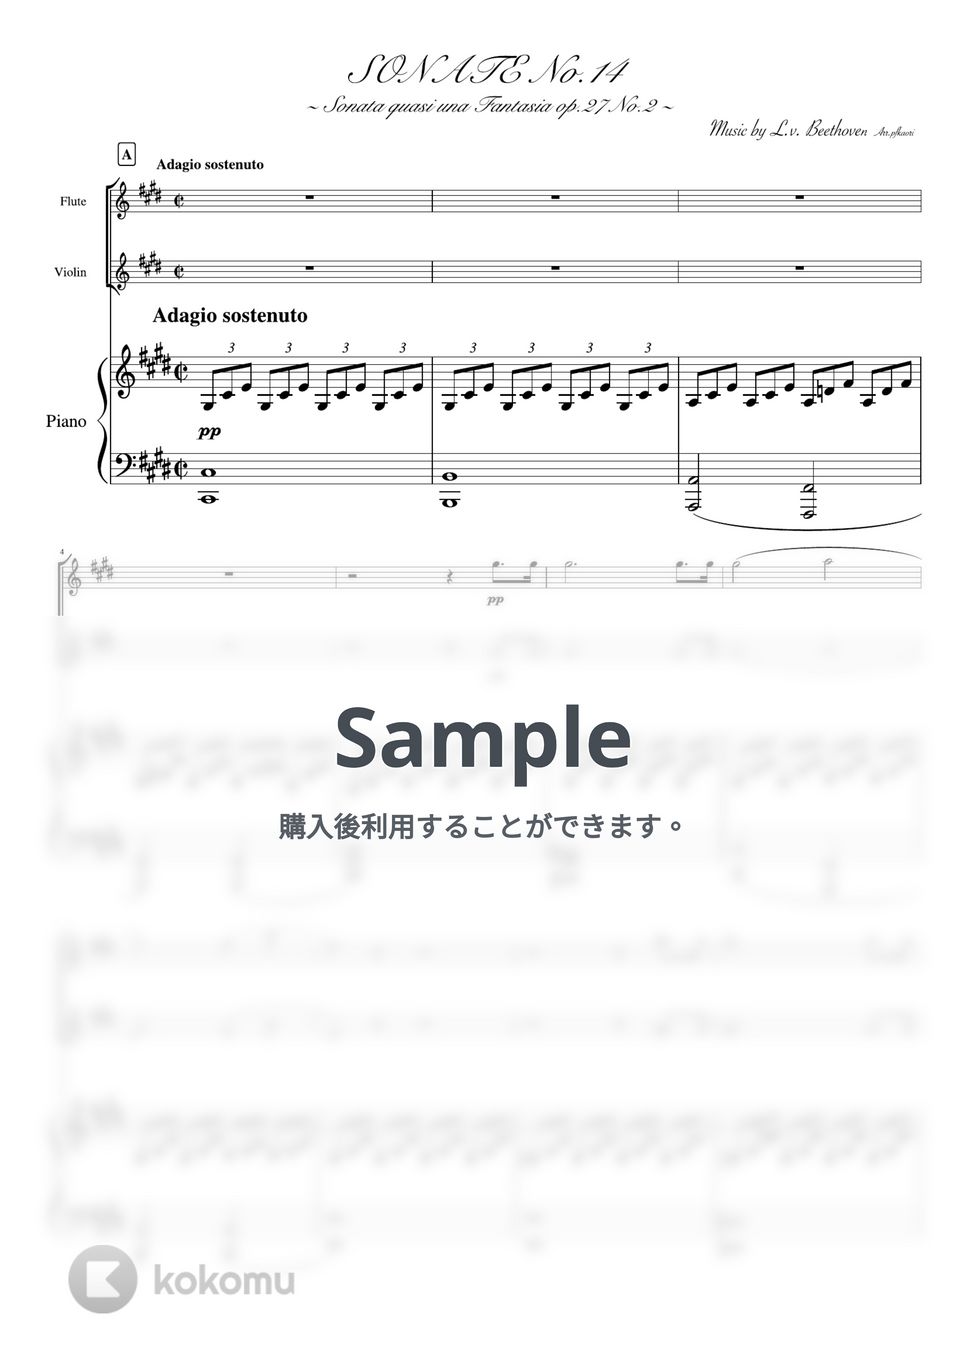 ベートーヴェン - 月光ソナタ (ピアノトリオ(フルート&バイオリン)) by pfkaori